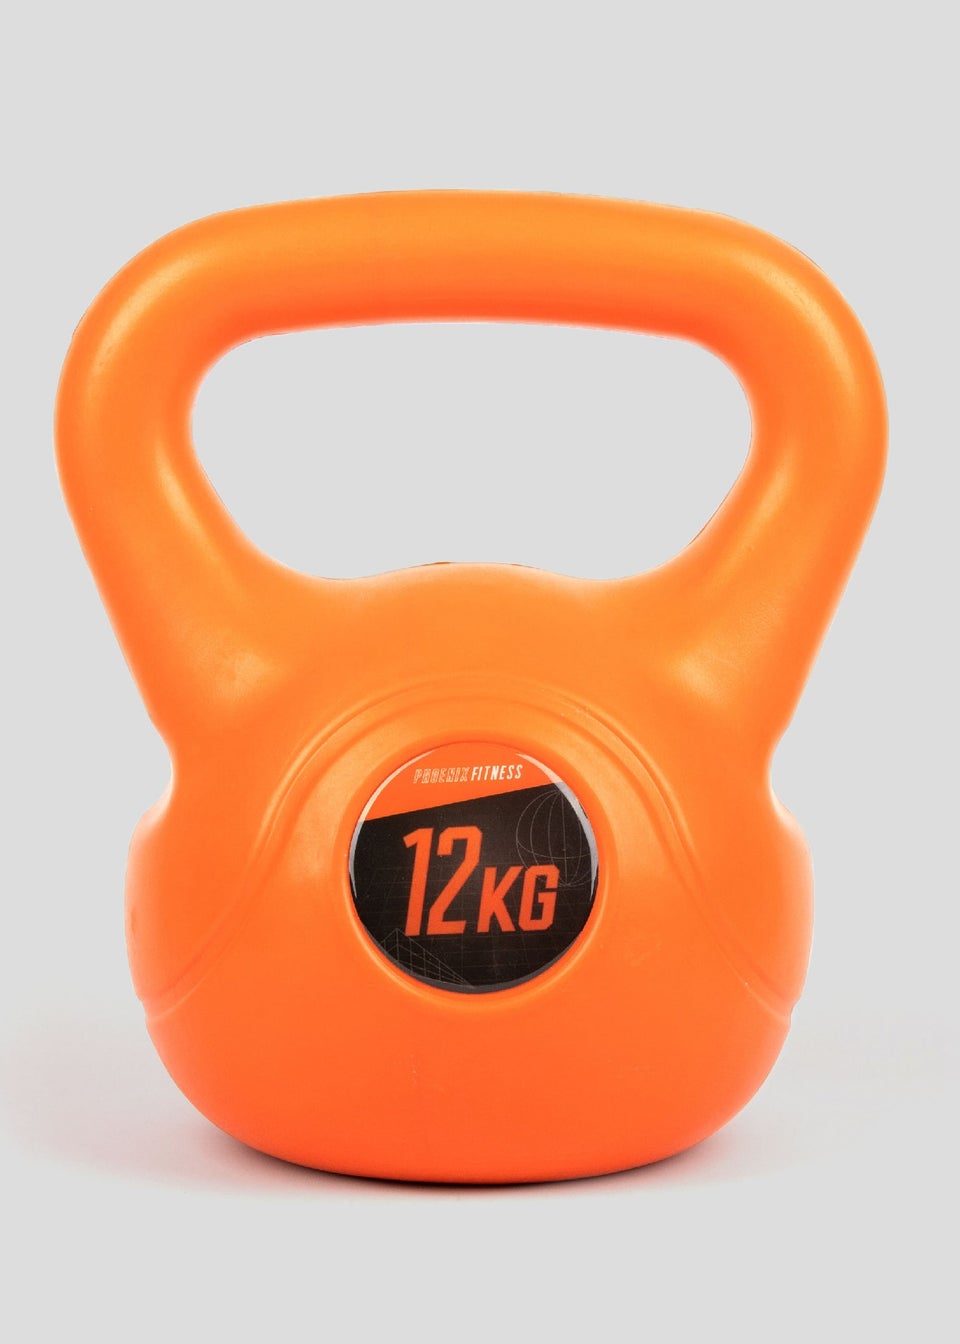 Phoenix Fitness Kettle Bell (12Kg)